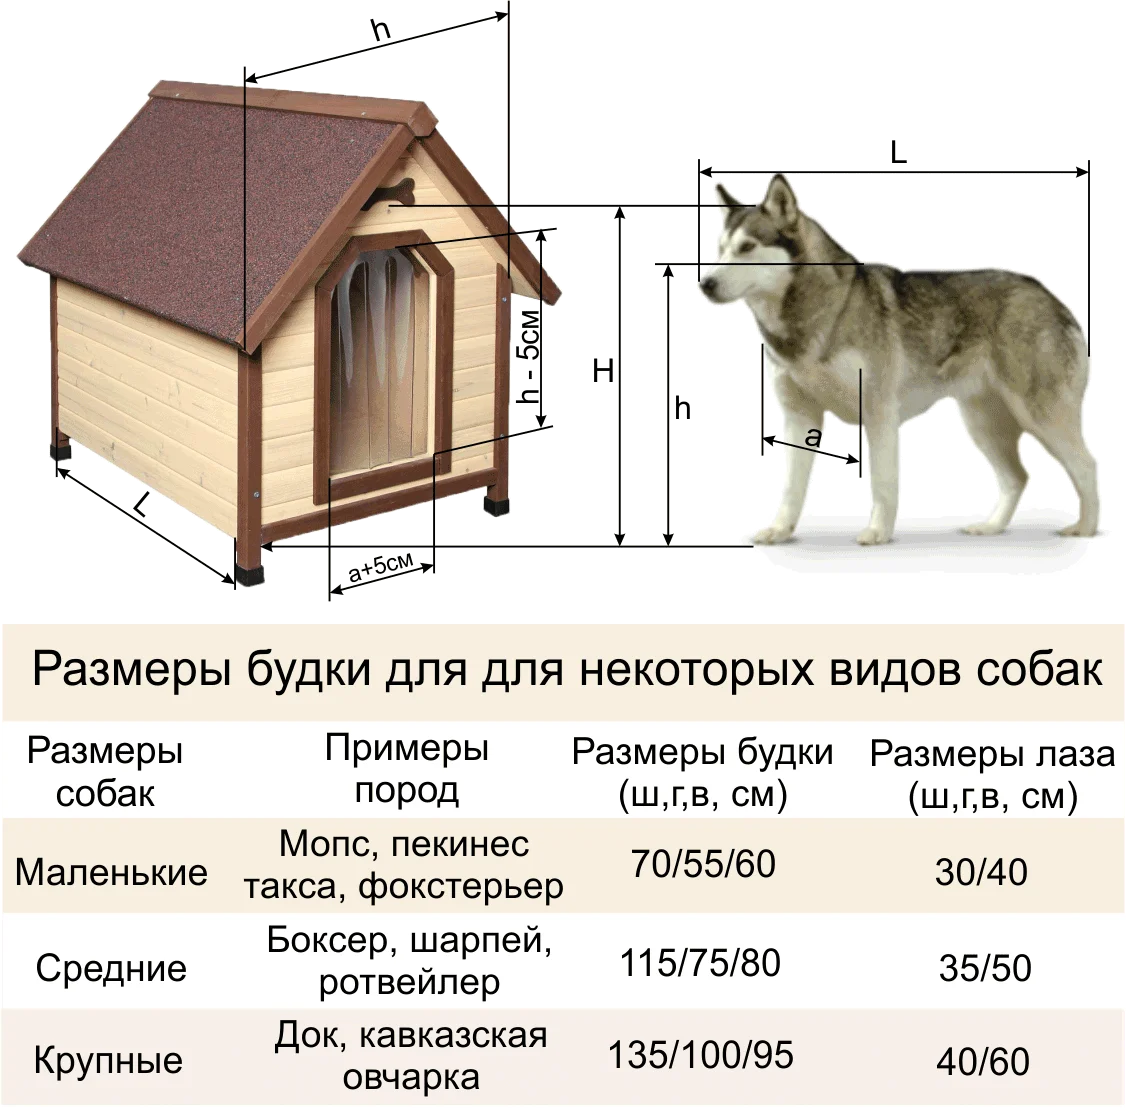 Будки для собак в Санкт-Петербурге фото цены